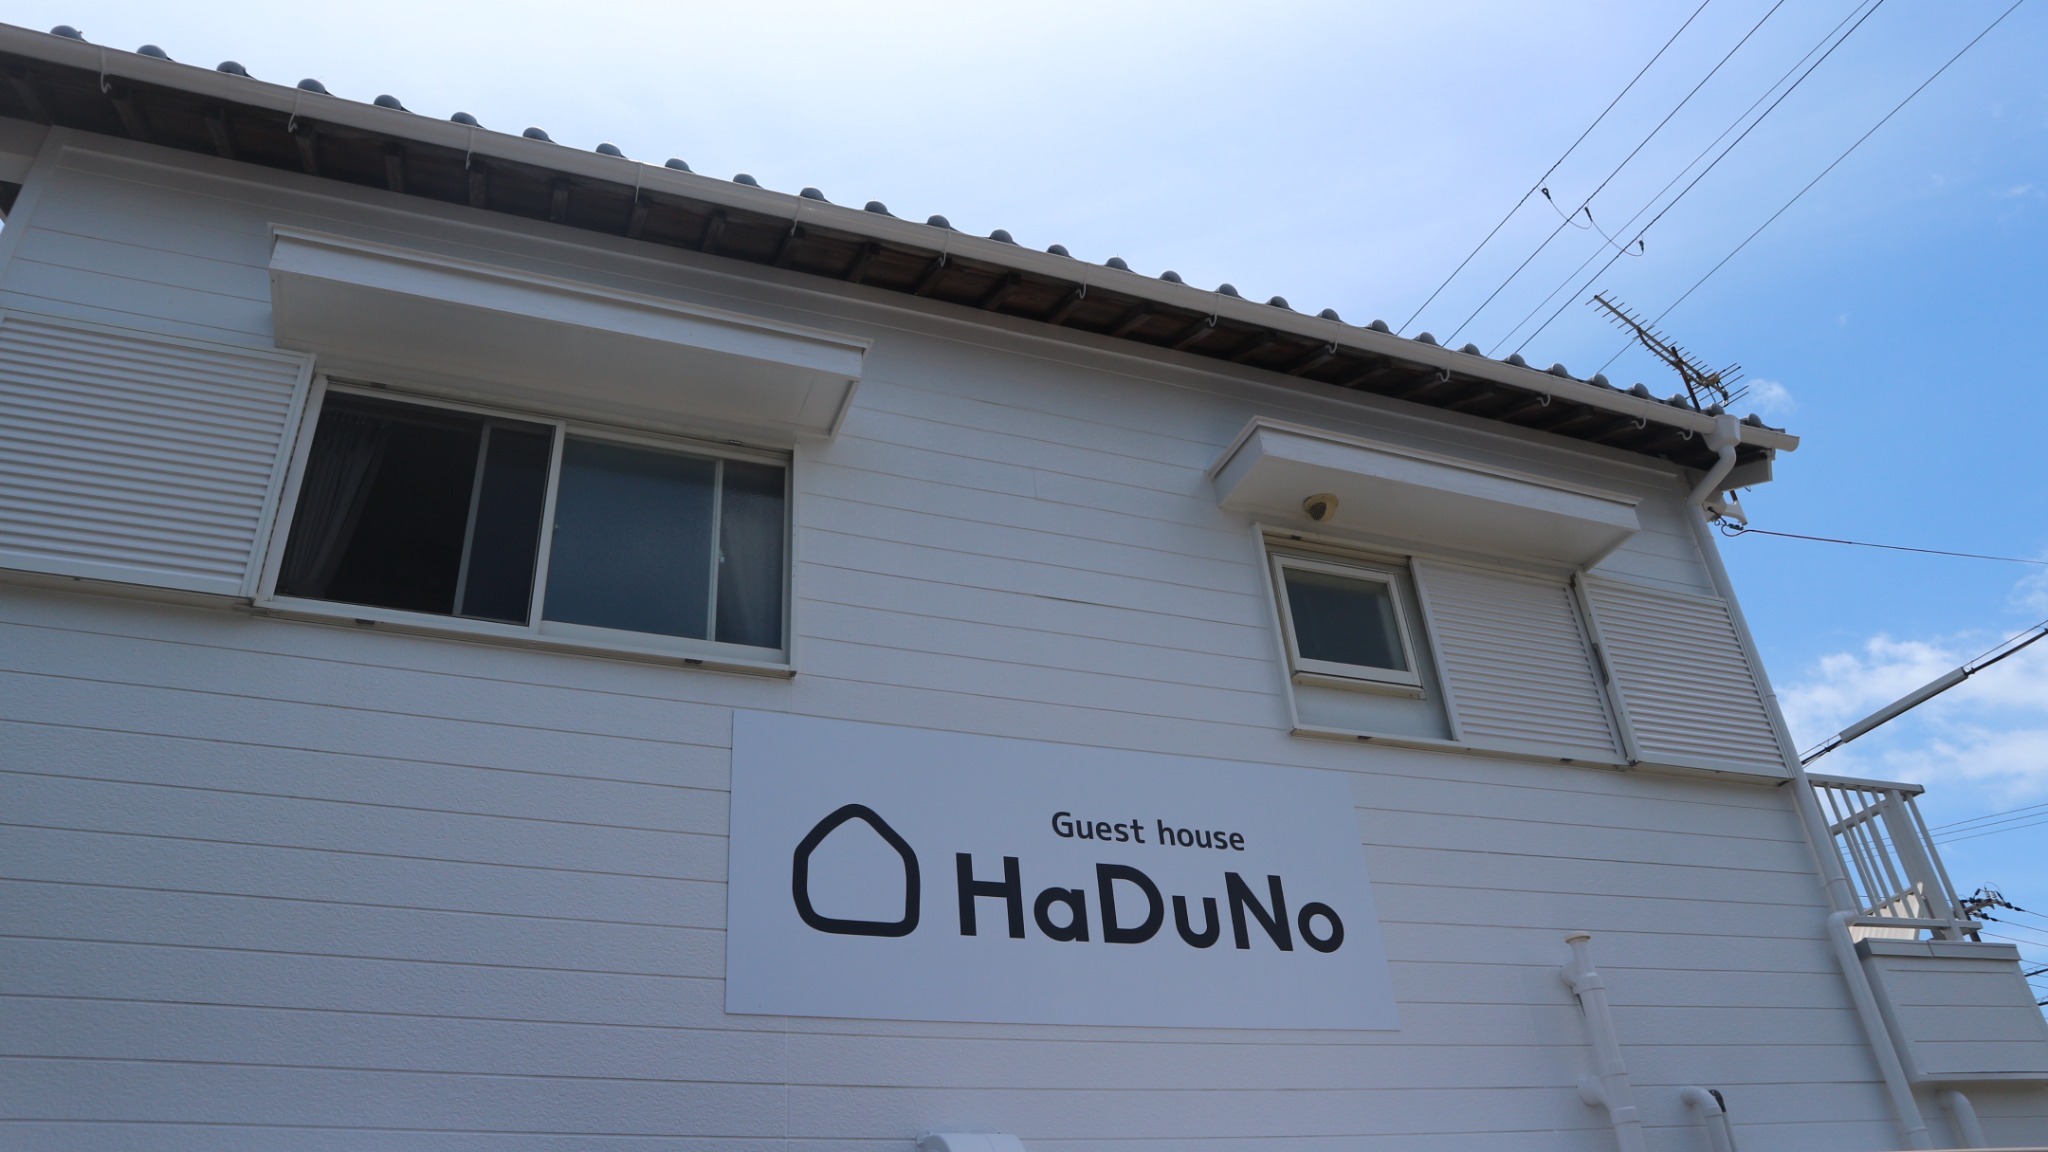 世界遺産の熊野速玉大社、熊野那智大社に程近い、広いLDKとバルコニーがある1組限定の宿泊施設です。